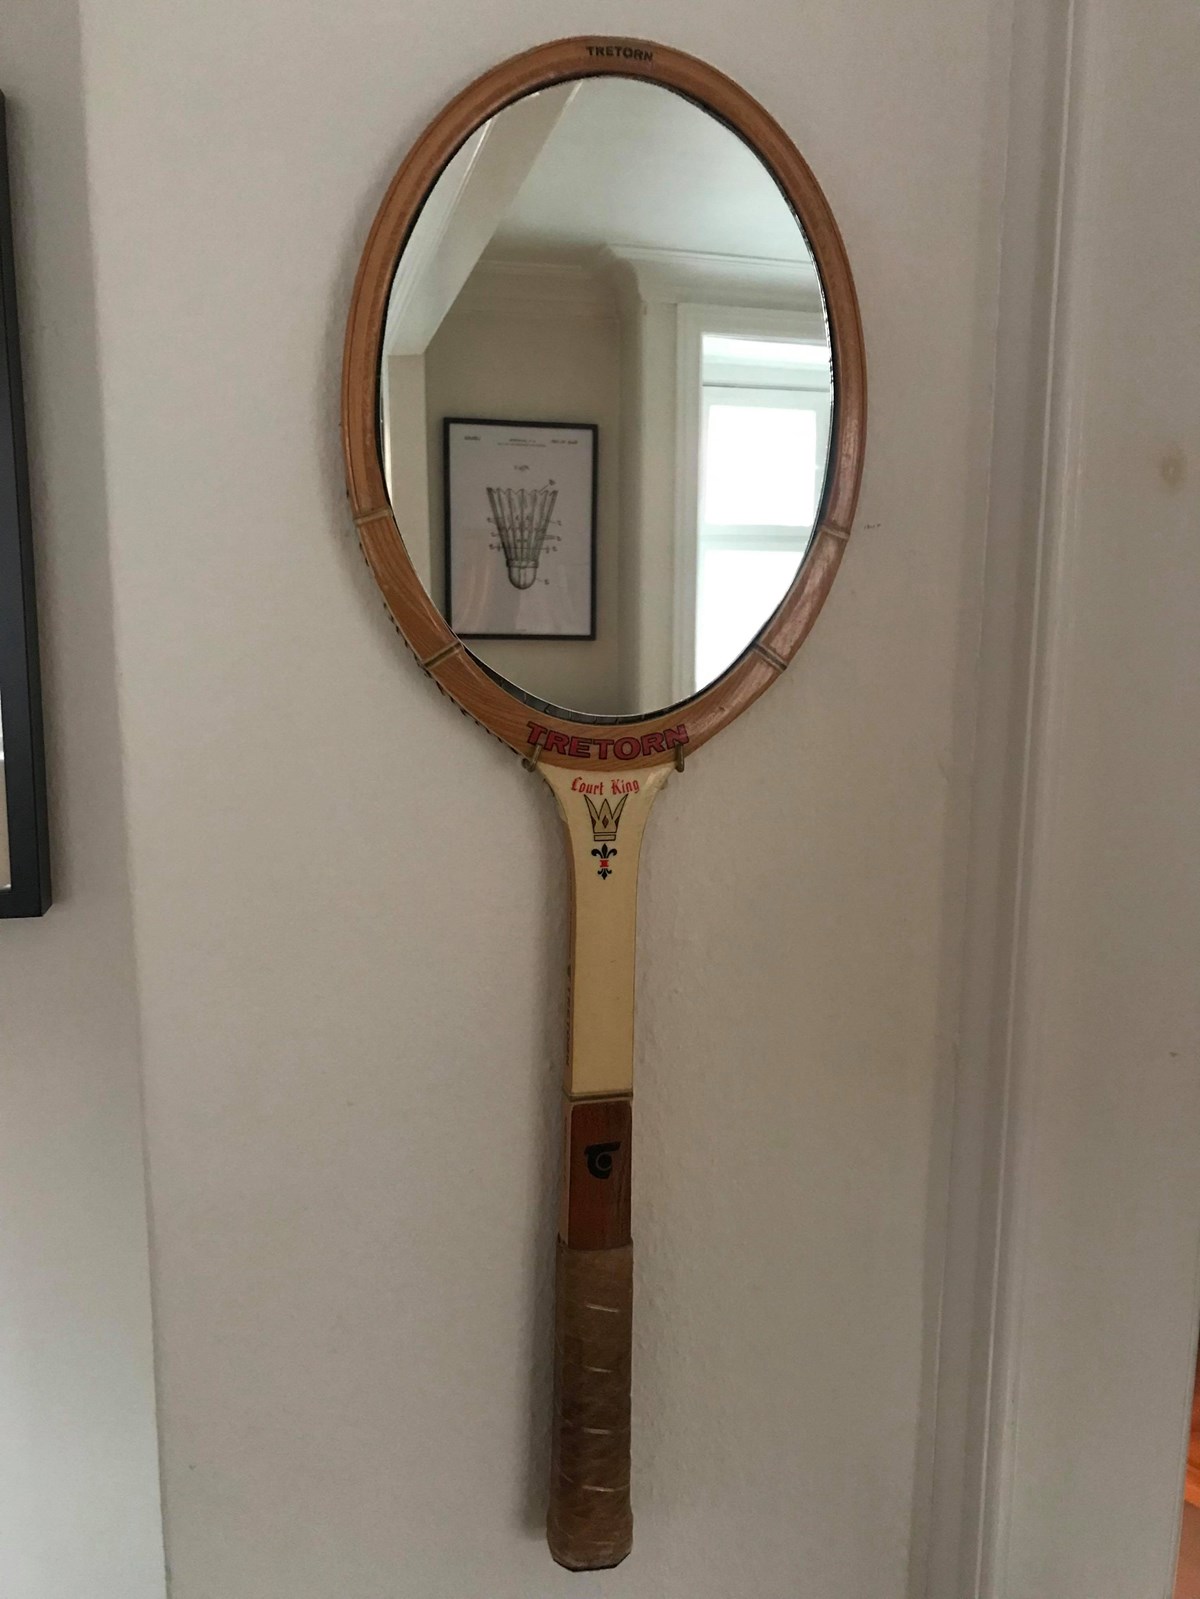 Hvis du ikke gider at fange fjerbolde med din gamle badmintonketchere, så kan du fange dit eget blik i spejlet